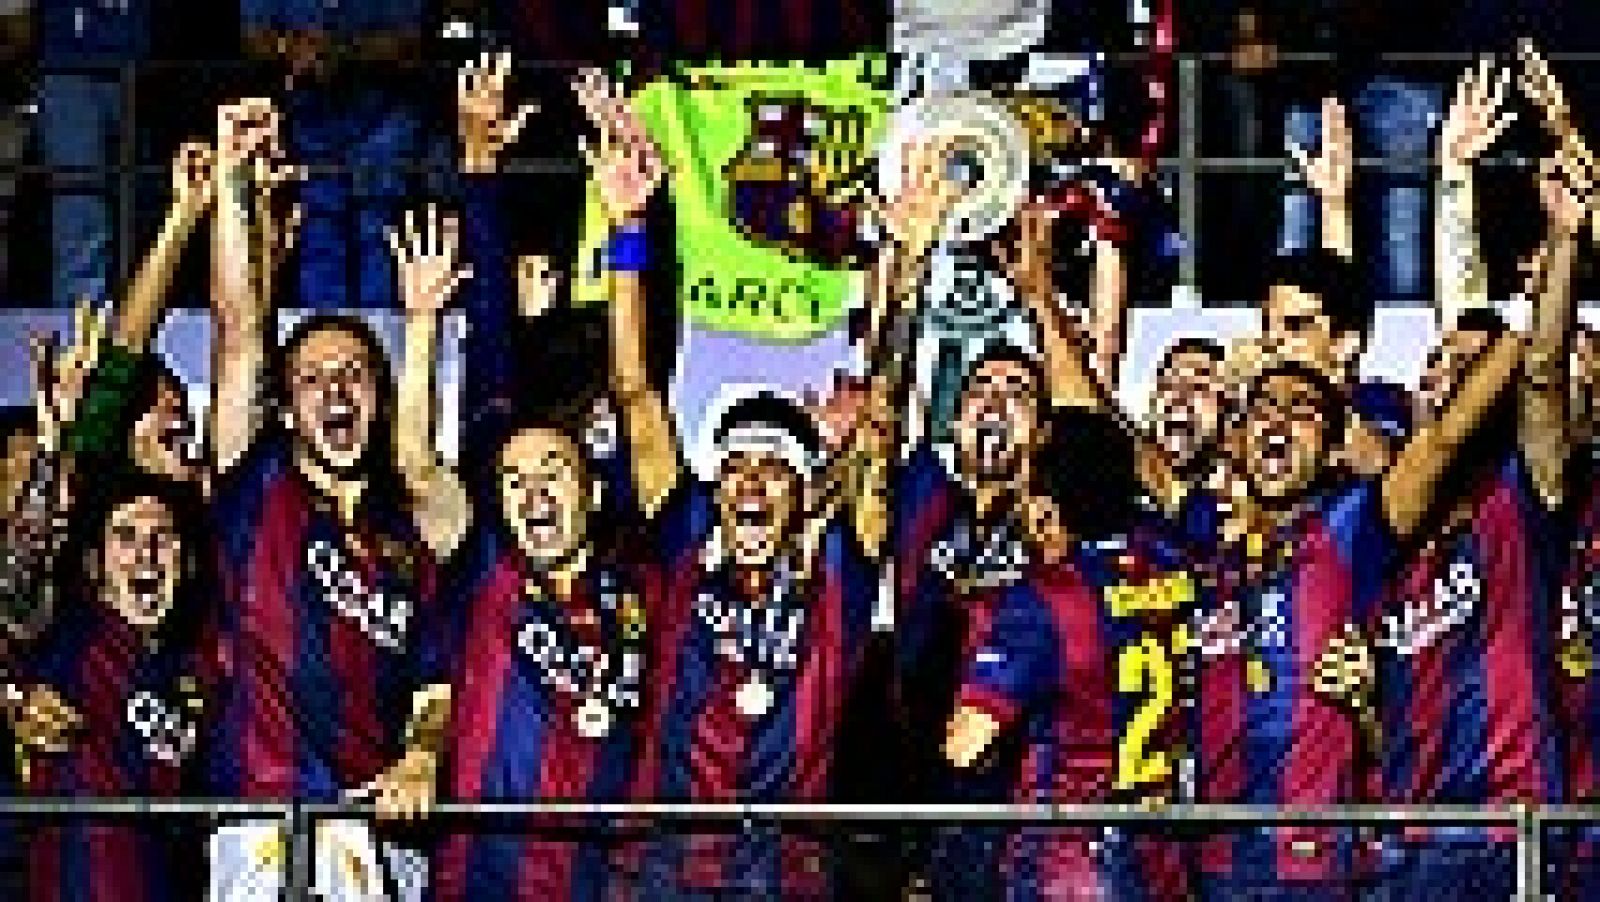 Última champions del barcelona 2015